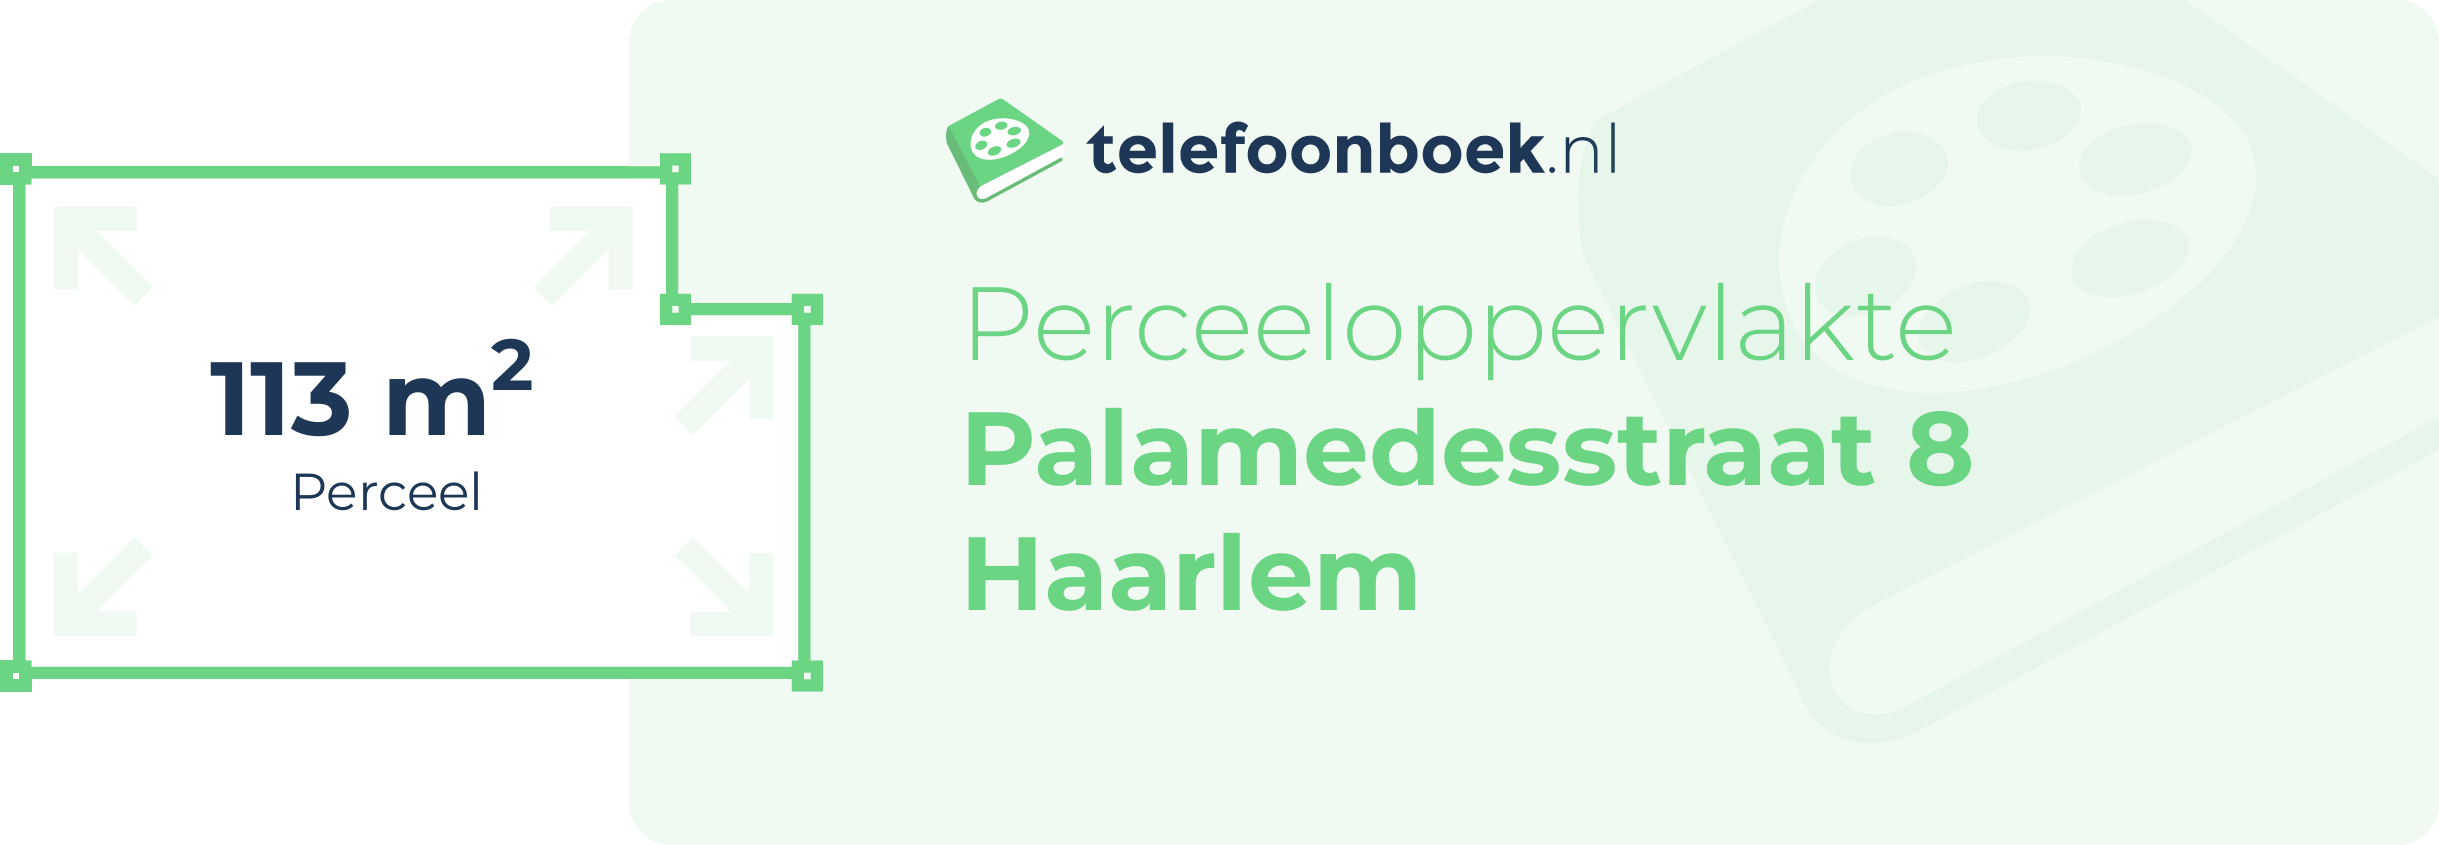 Perceeloppervlakte Palamedesstraat 8 Haarlem